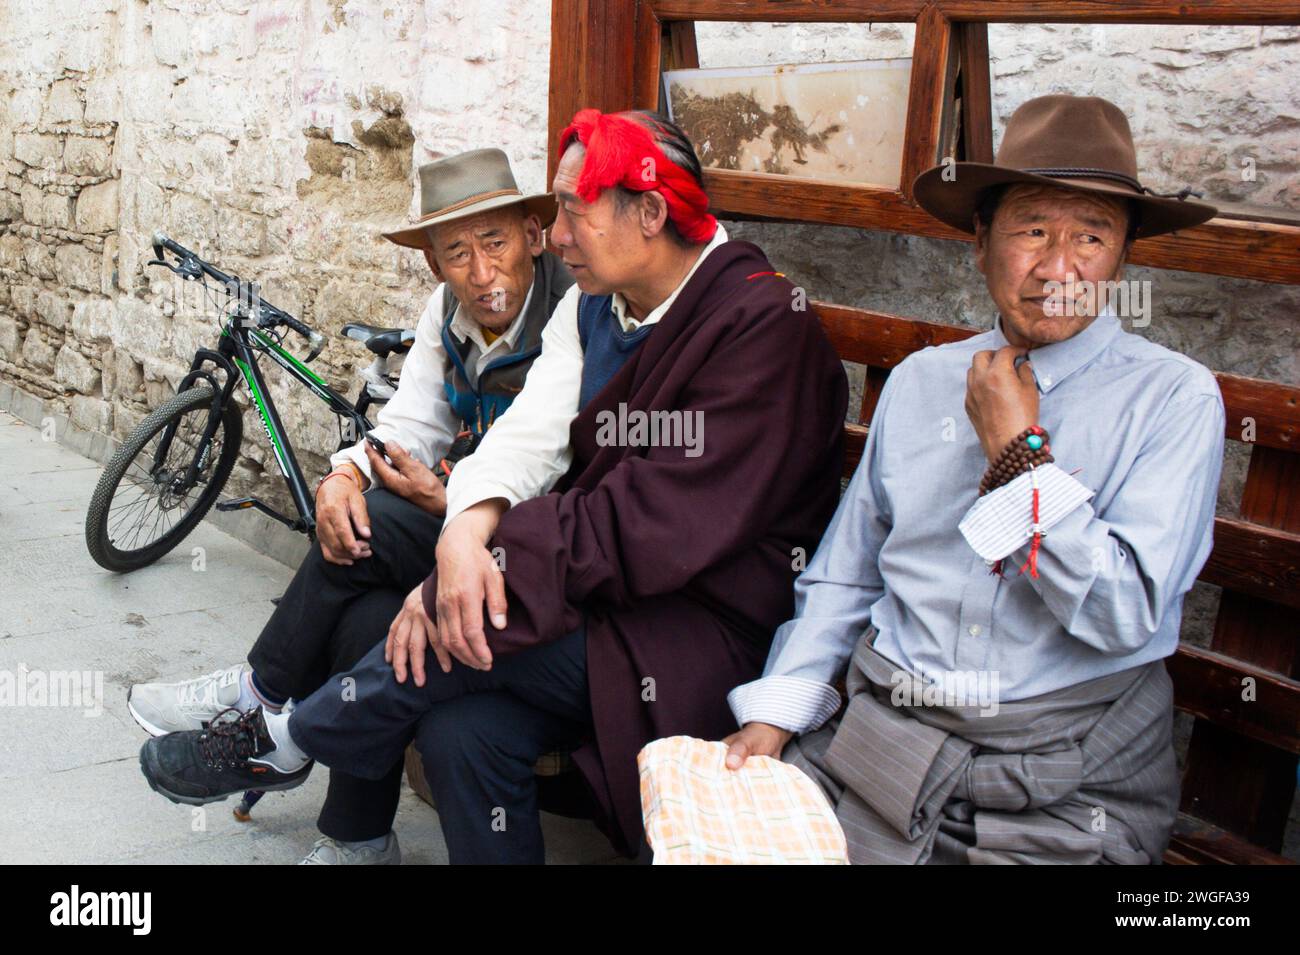 Einheimische Männer ruhen sich auf einer Bank auf dem Barkhor-Platz aus, der Heimat des Jokhang-Tempels in Lhasa, der Hauptstadt der Autonomen Region Tibet in China. Stockfoto